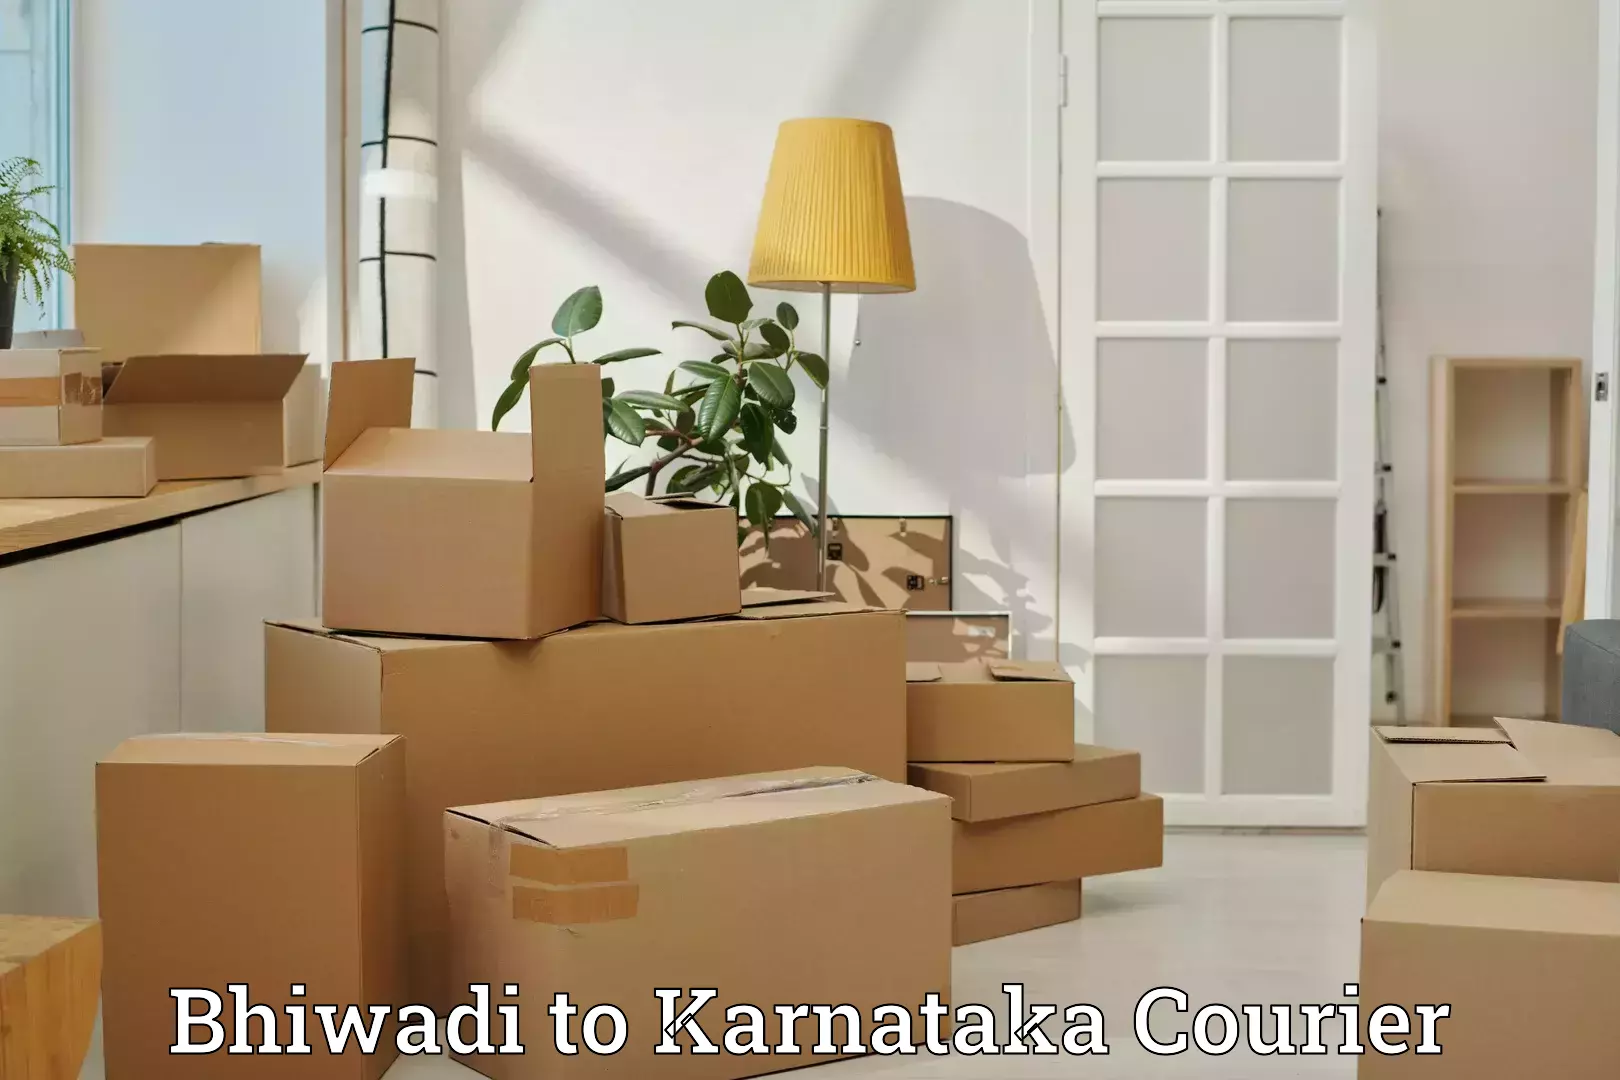 Baggage handling services Bhiwadi to Karnataka